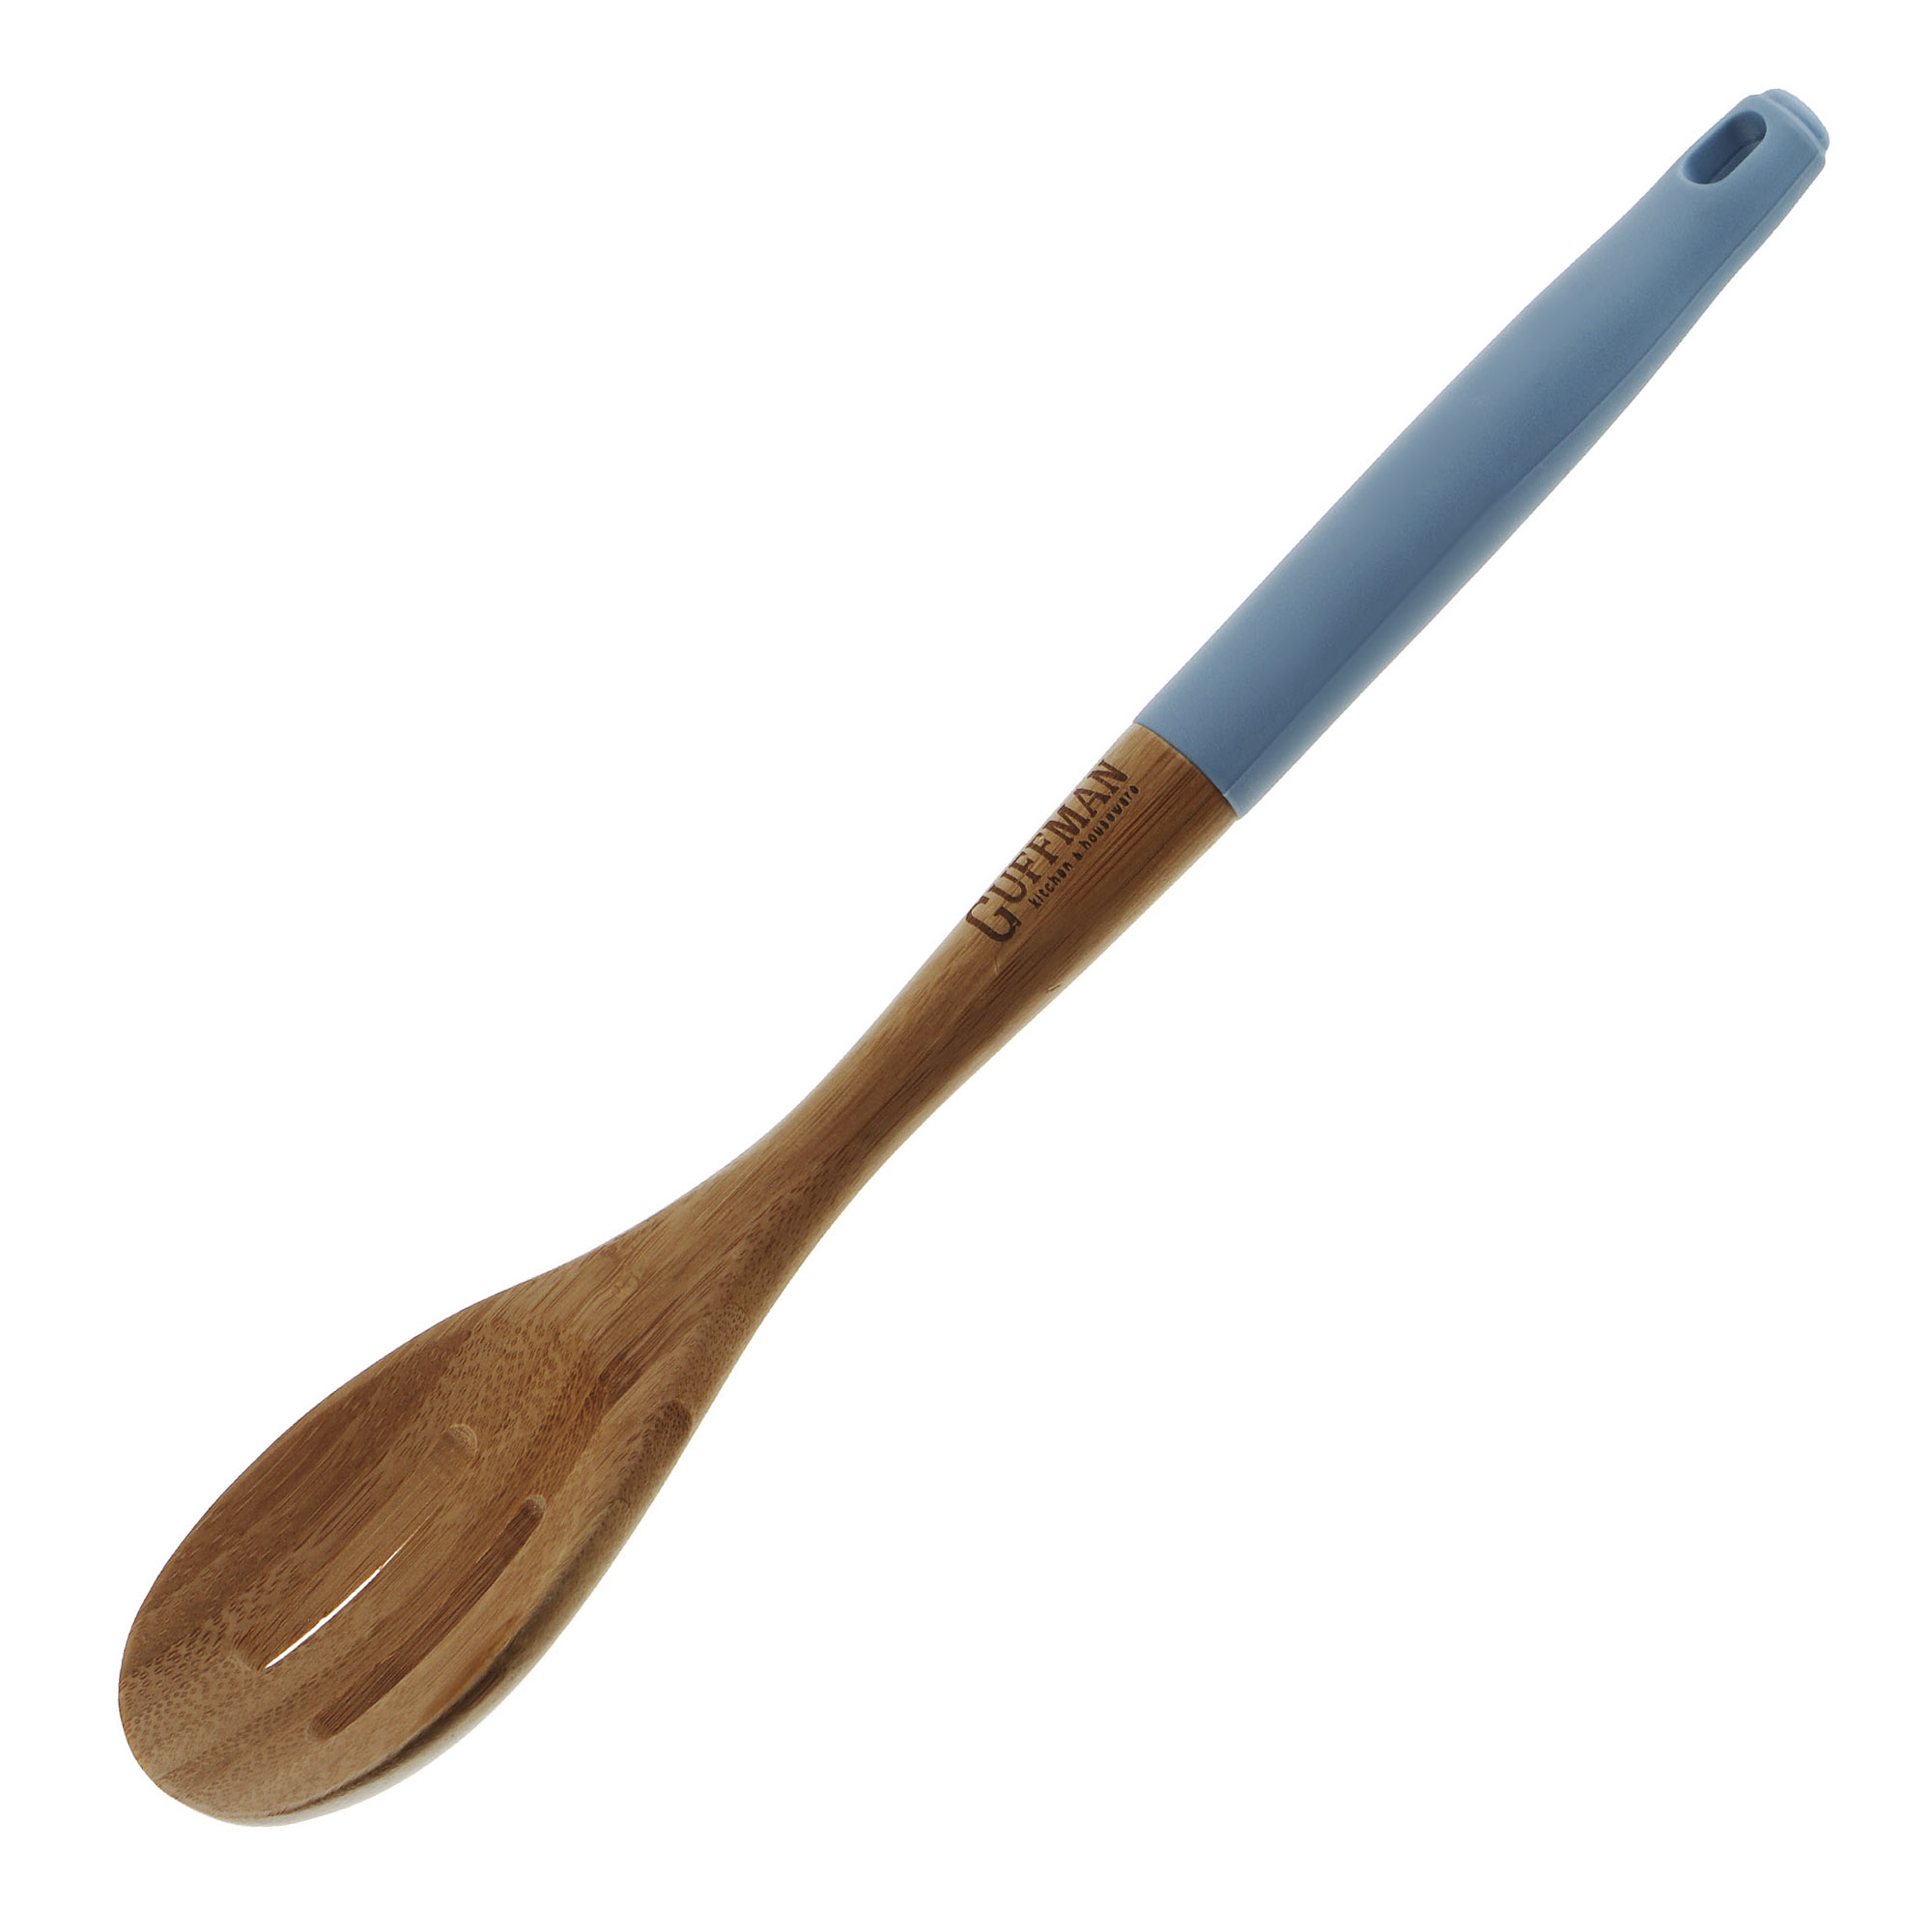 Ложка бамбуковая Guffman с прорезями 36 см голубая ложка guffman m04 122 b силиконовая голубой